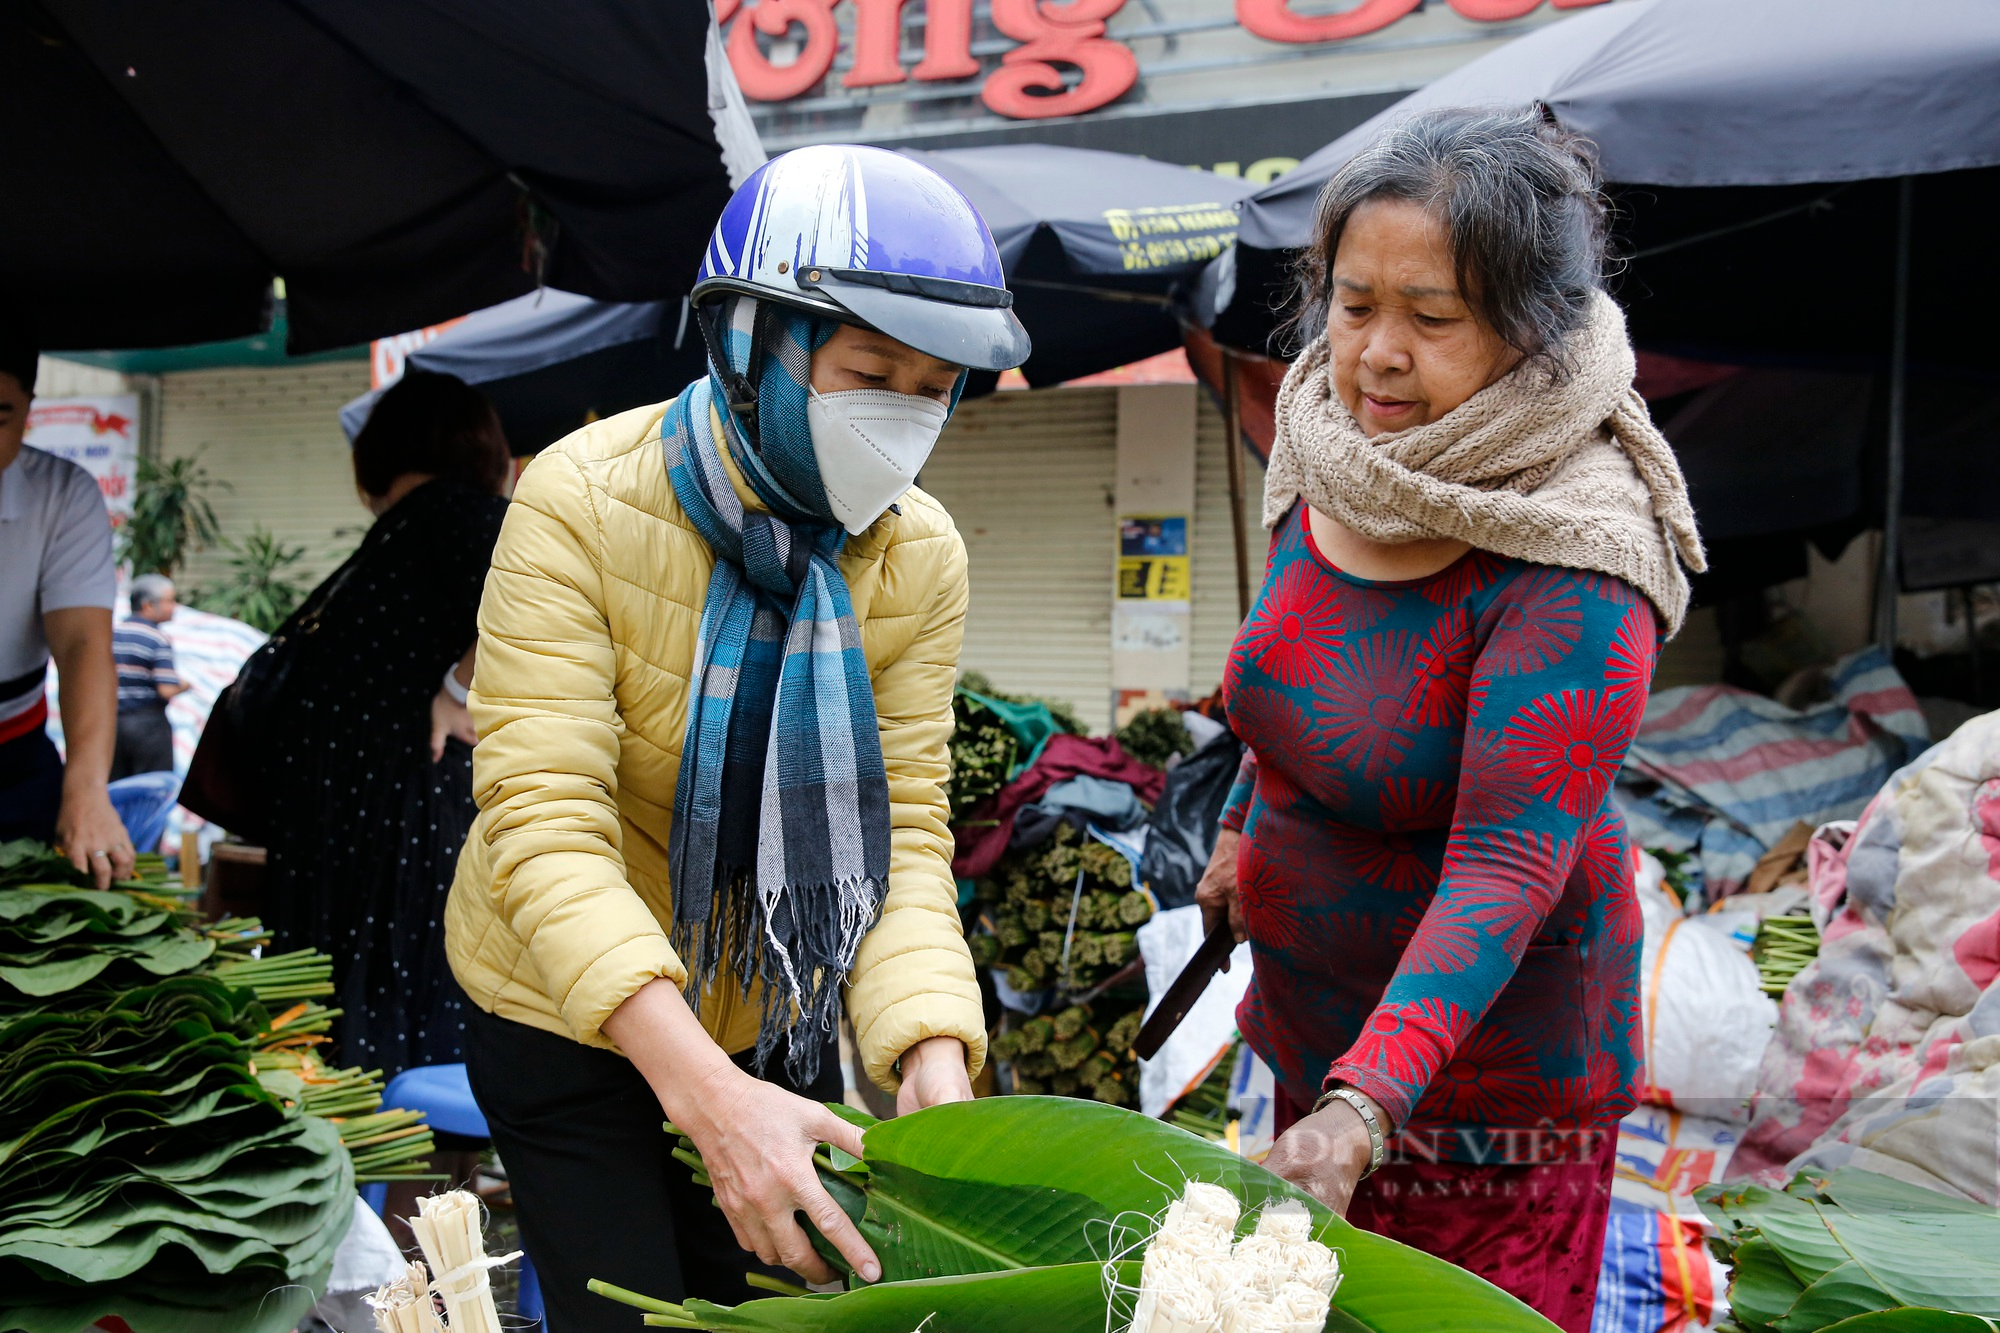 Chợ lá dong gói bánh chưng lâu đời nhất Hà Nội nhộn nhịp trước Tết  - Ảnh 3.